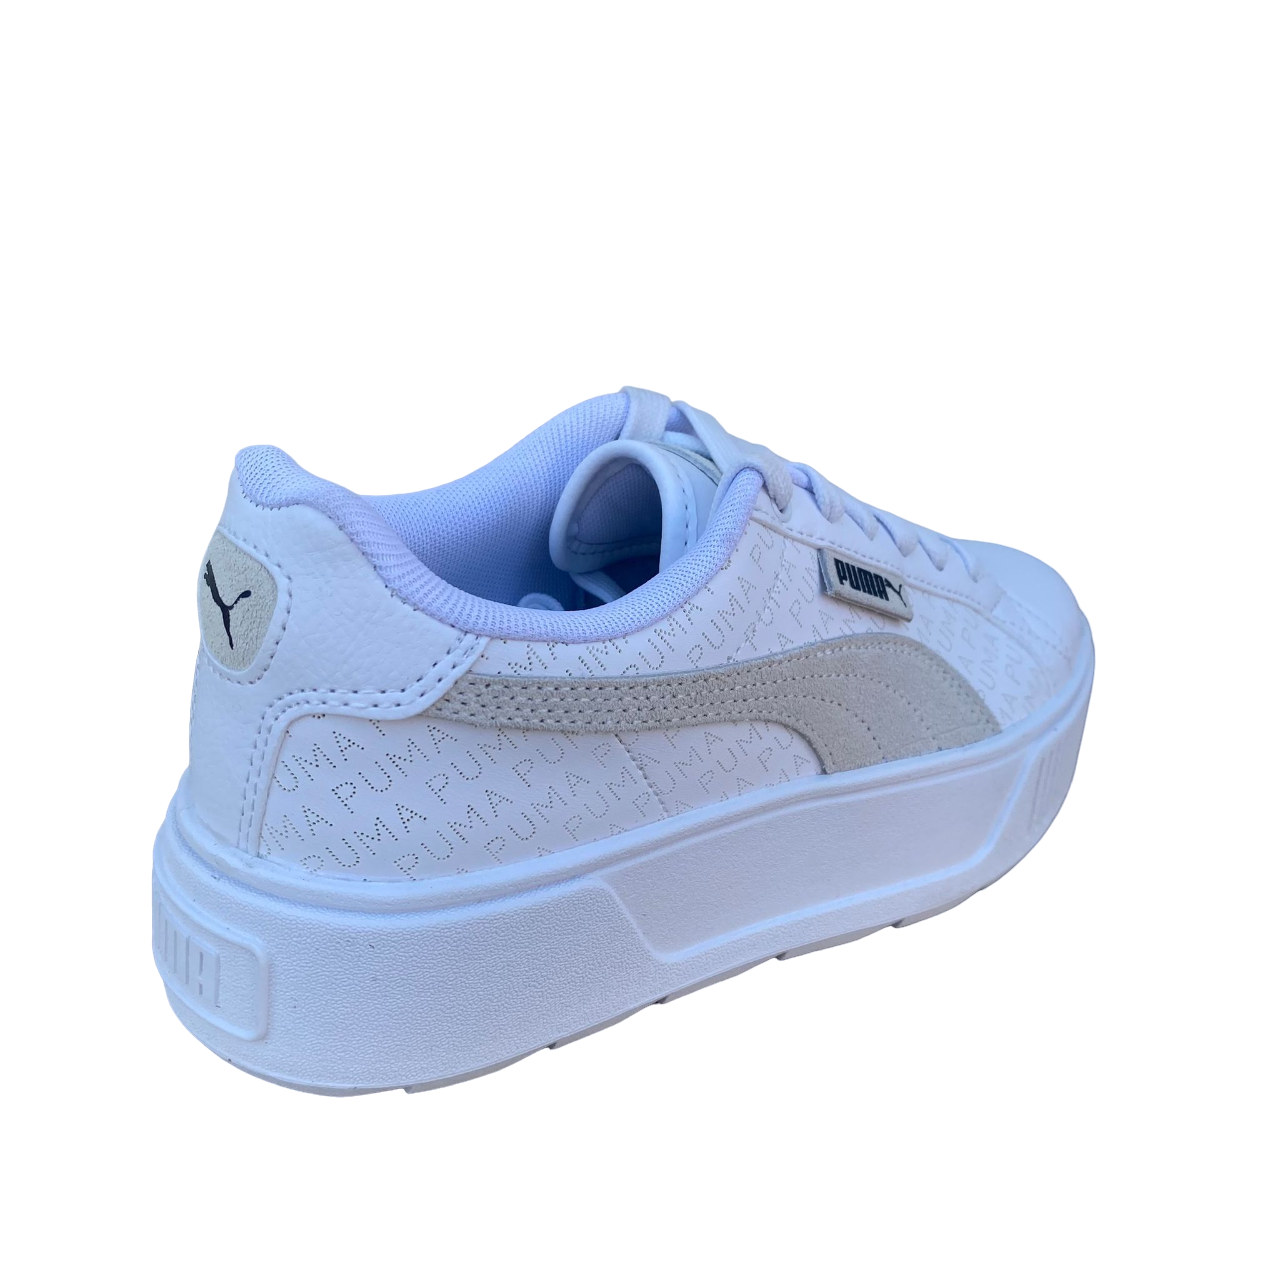 Puma scarpa sneakers da donna Karmen con Logo stampato 393194 01 bianco